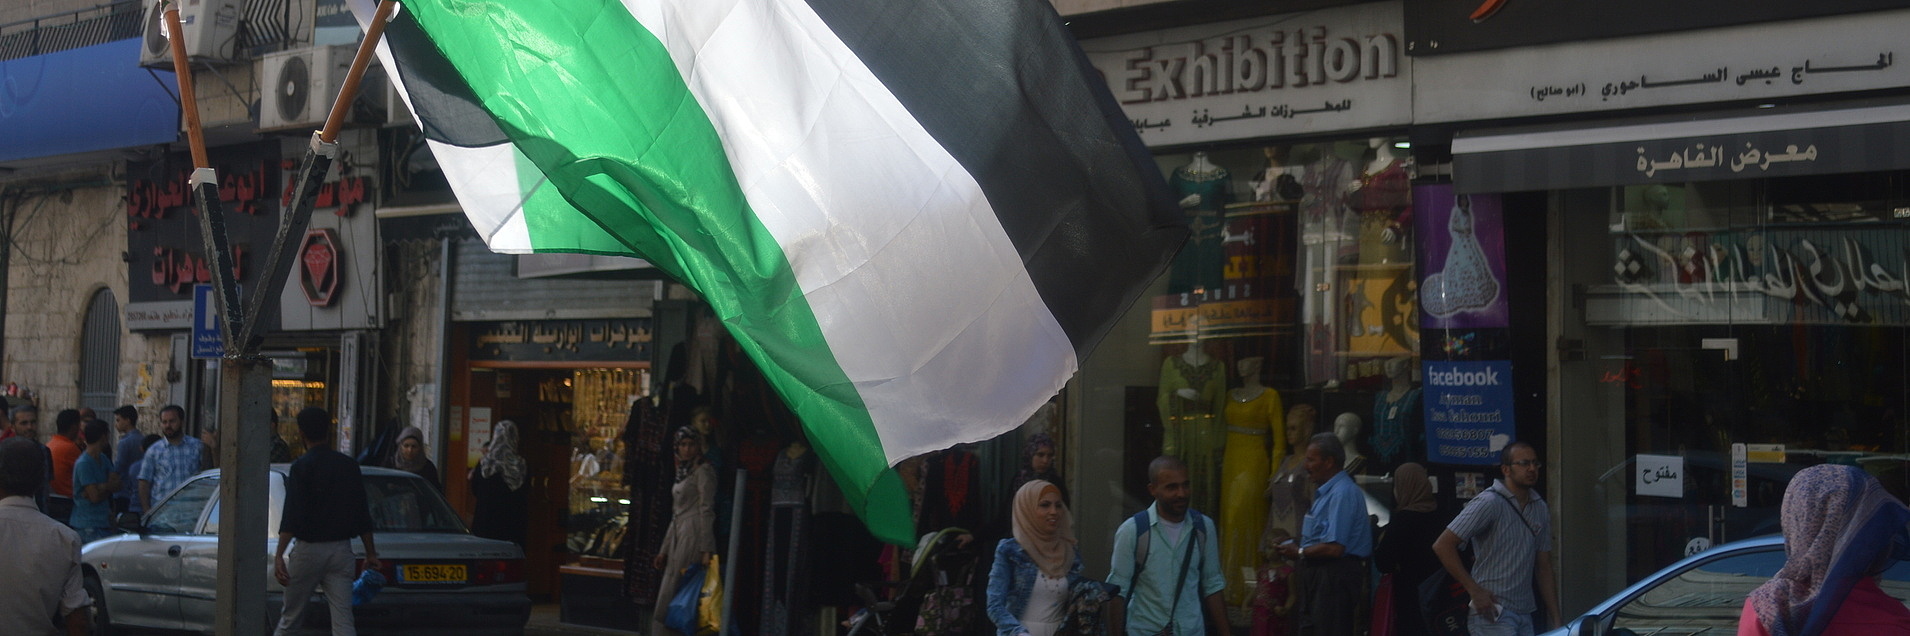 Palästinensische Flaggen vor einem Gebäude in Ramallah